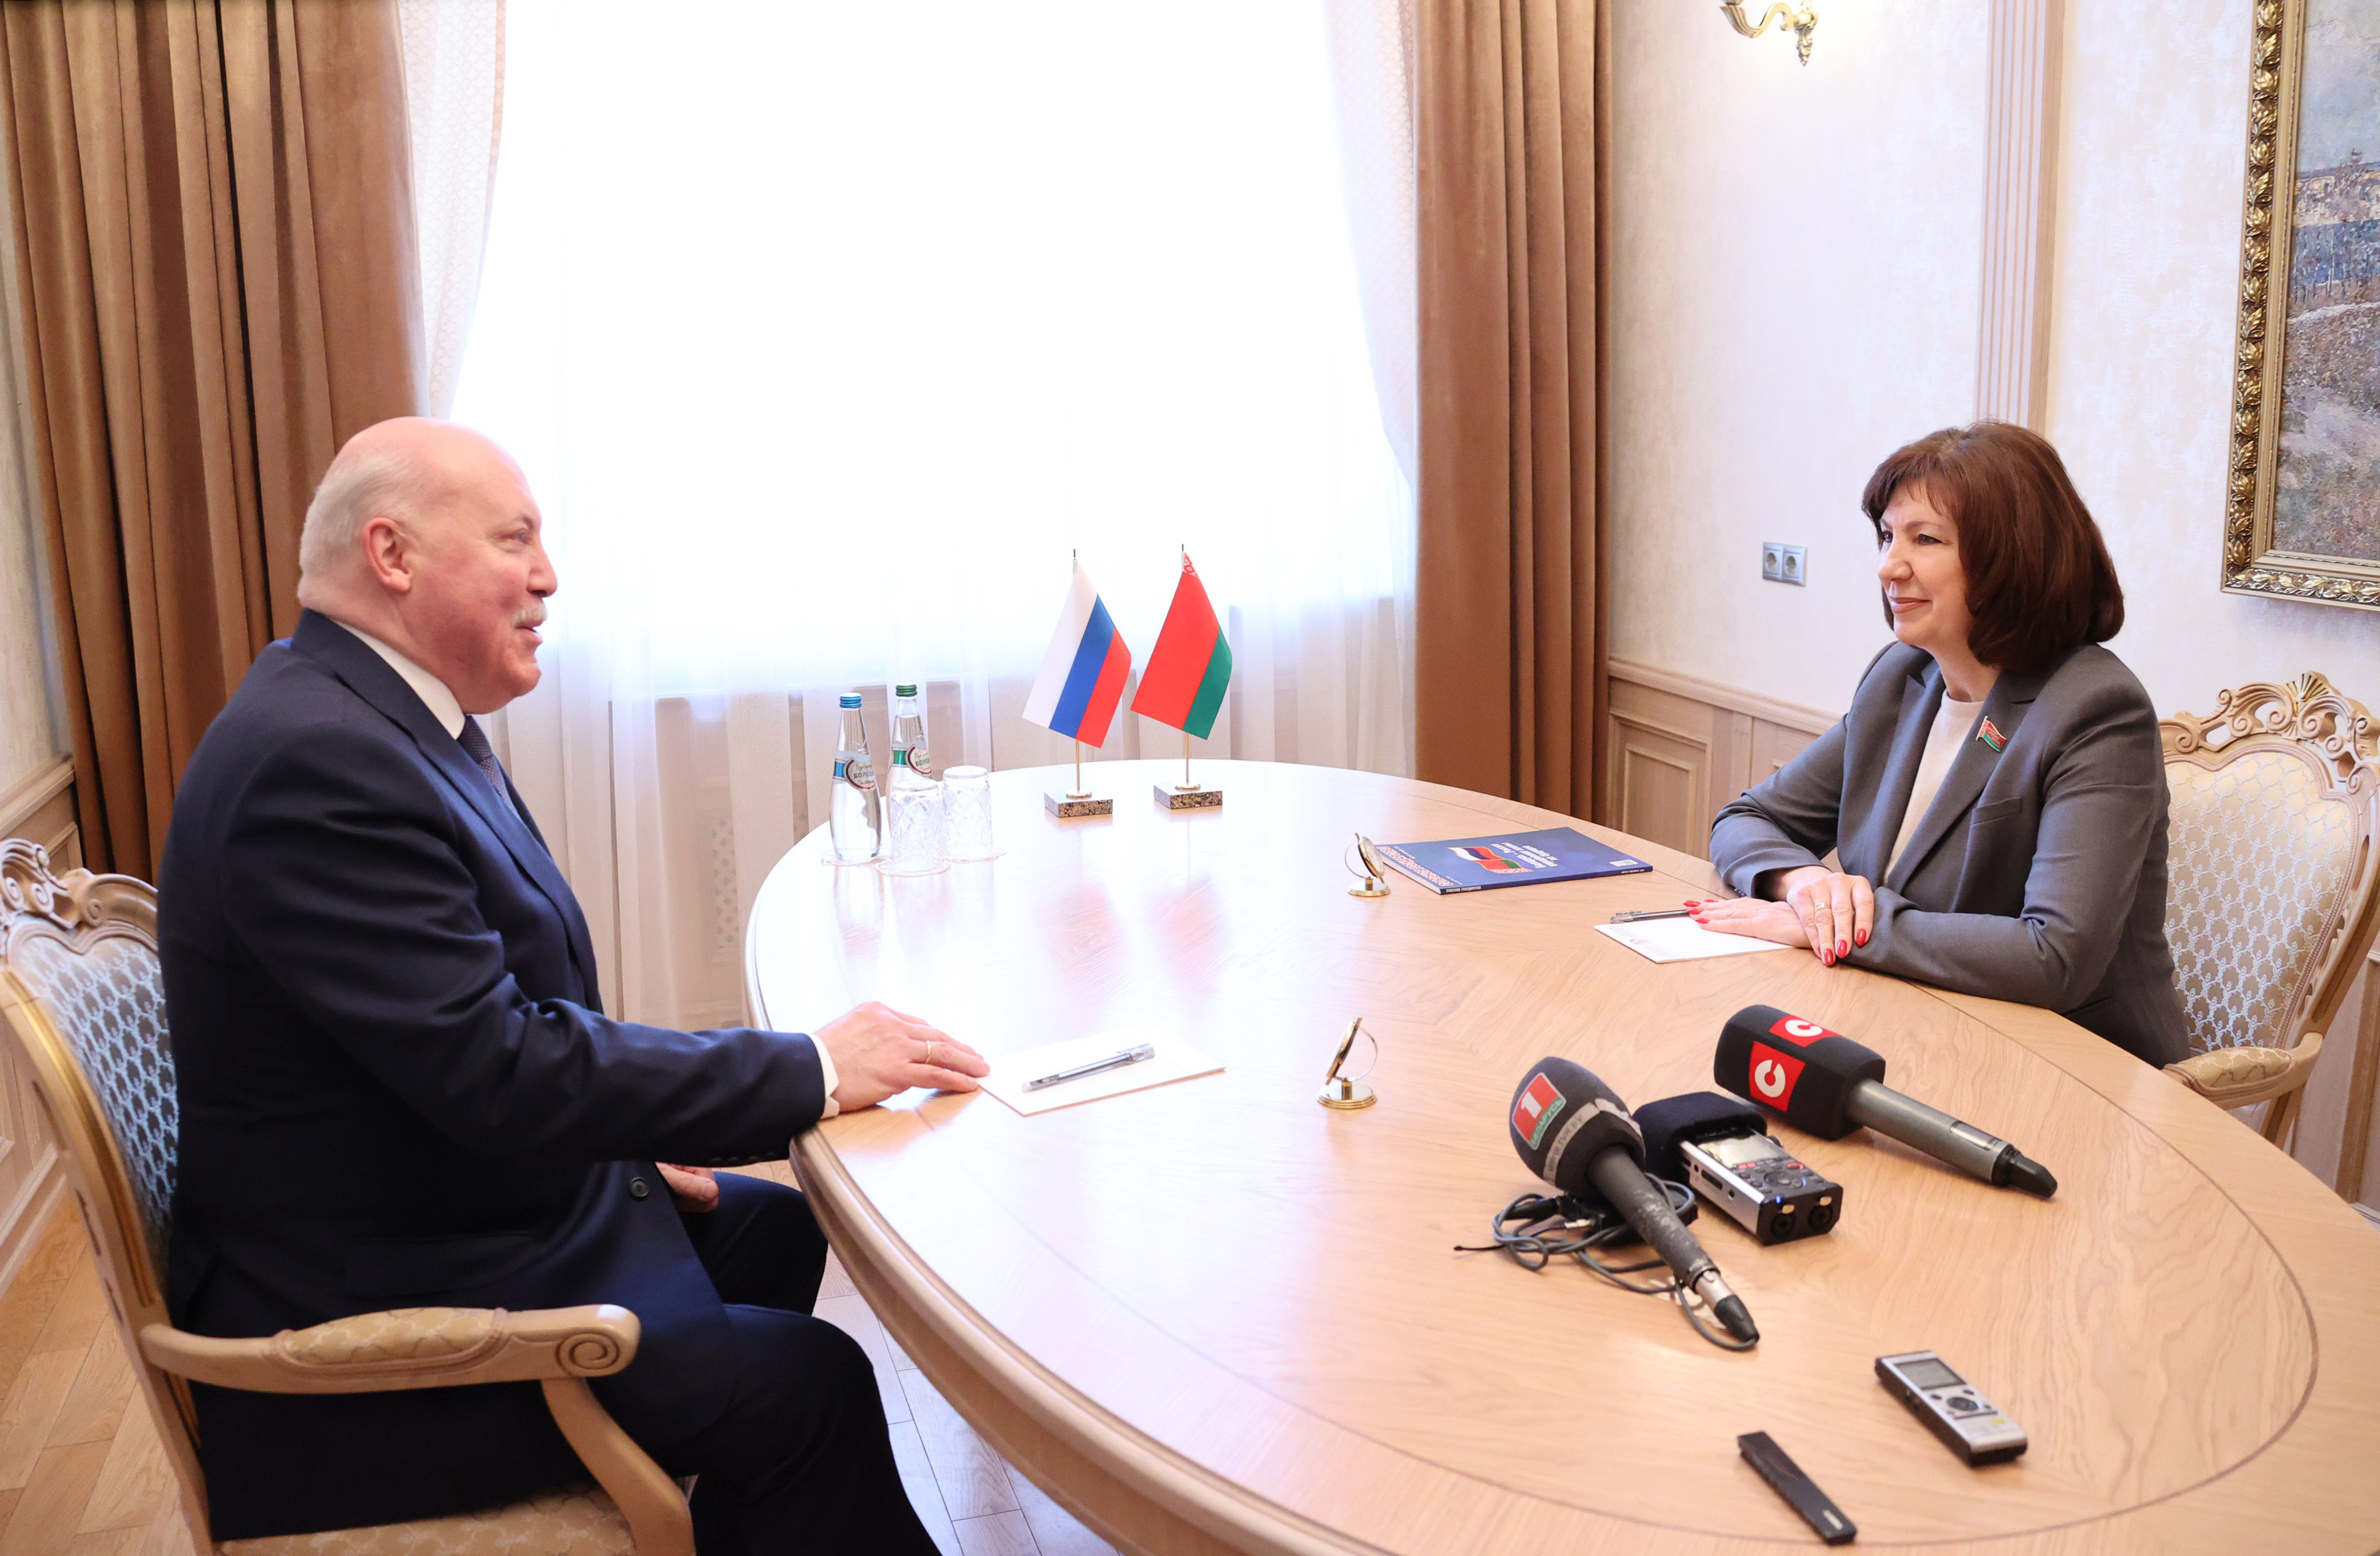 Мезенцев: граждане Беларуси и России абсолютно едины в понимании того, что надо делать и ежедневно работают в данном направлении